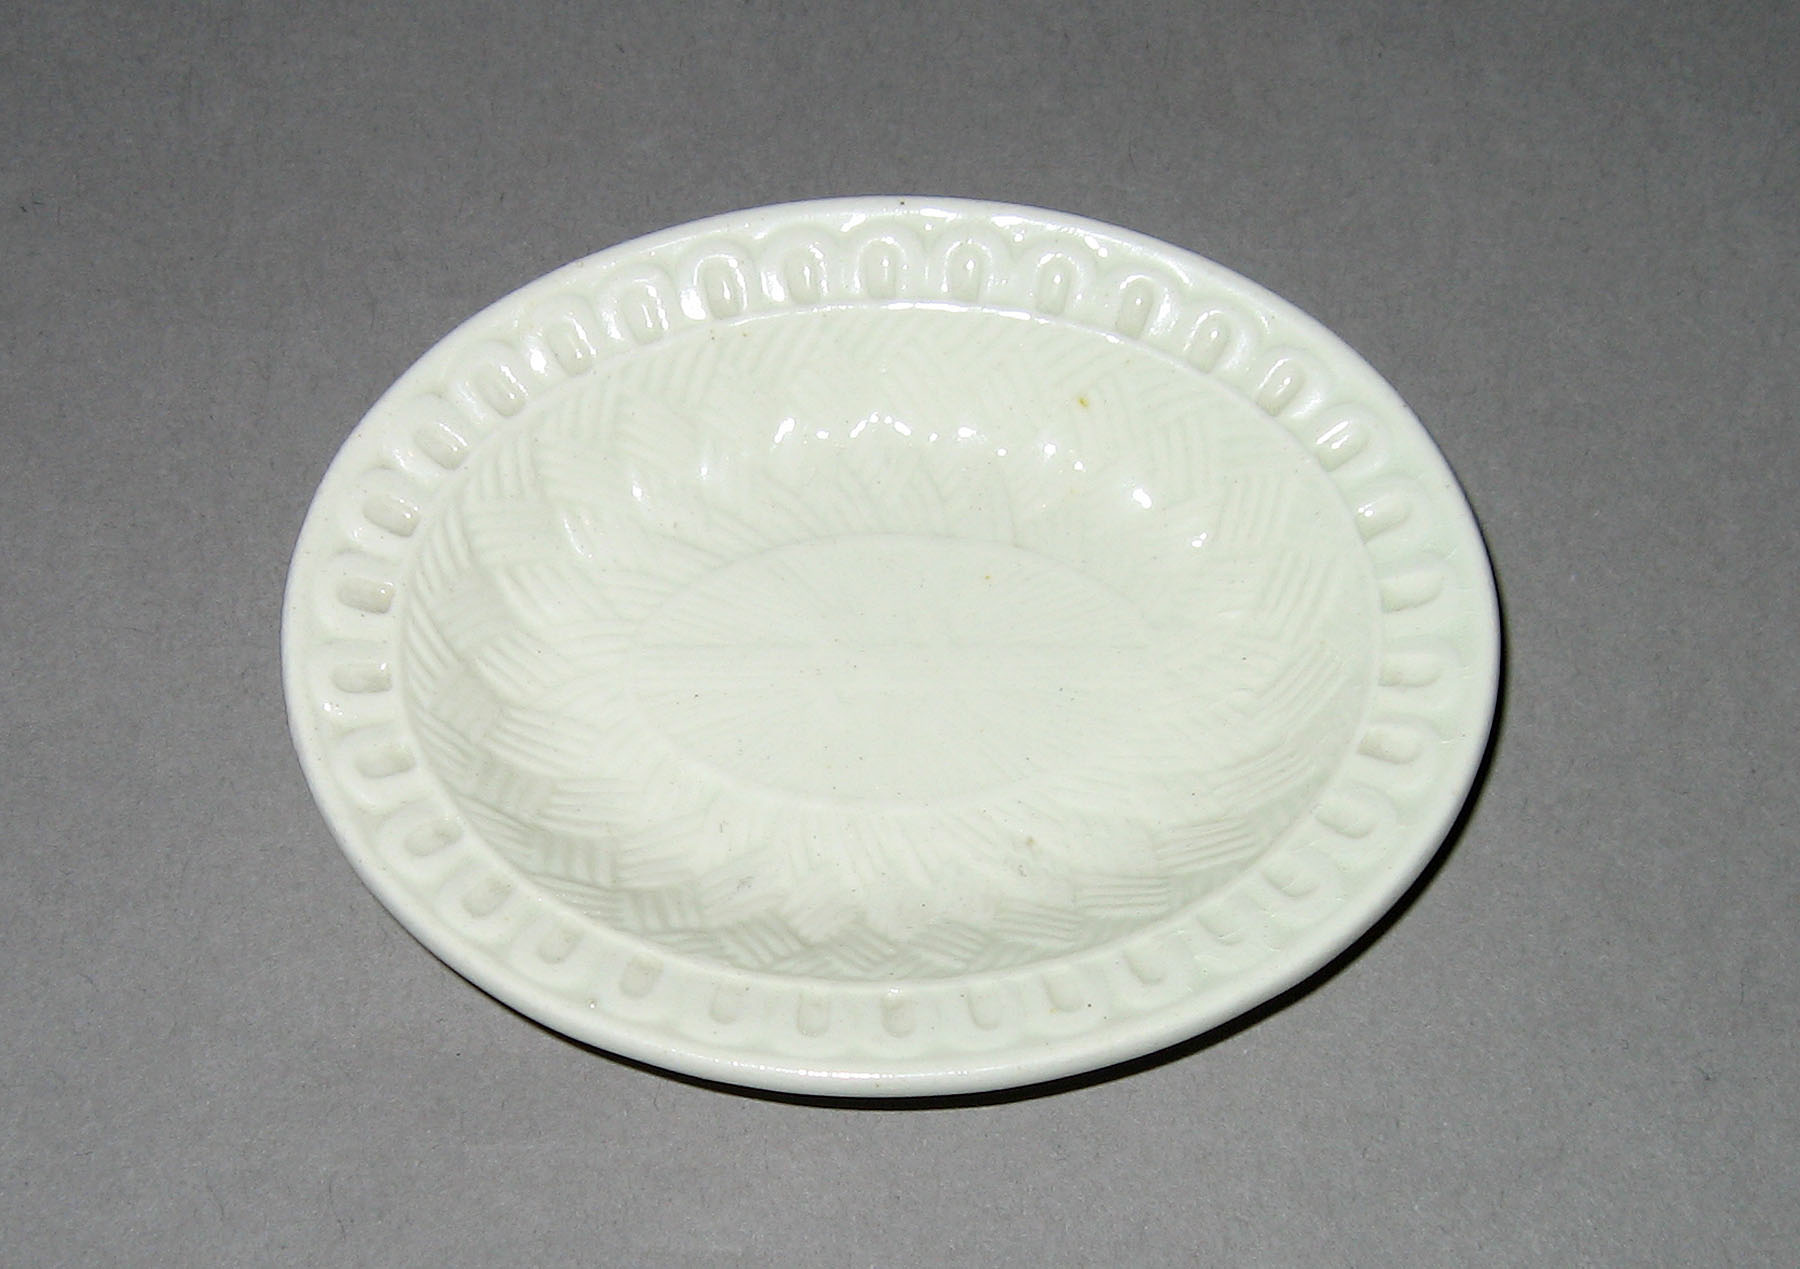 1955.0136.111 Miniature creamware dish